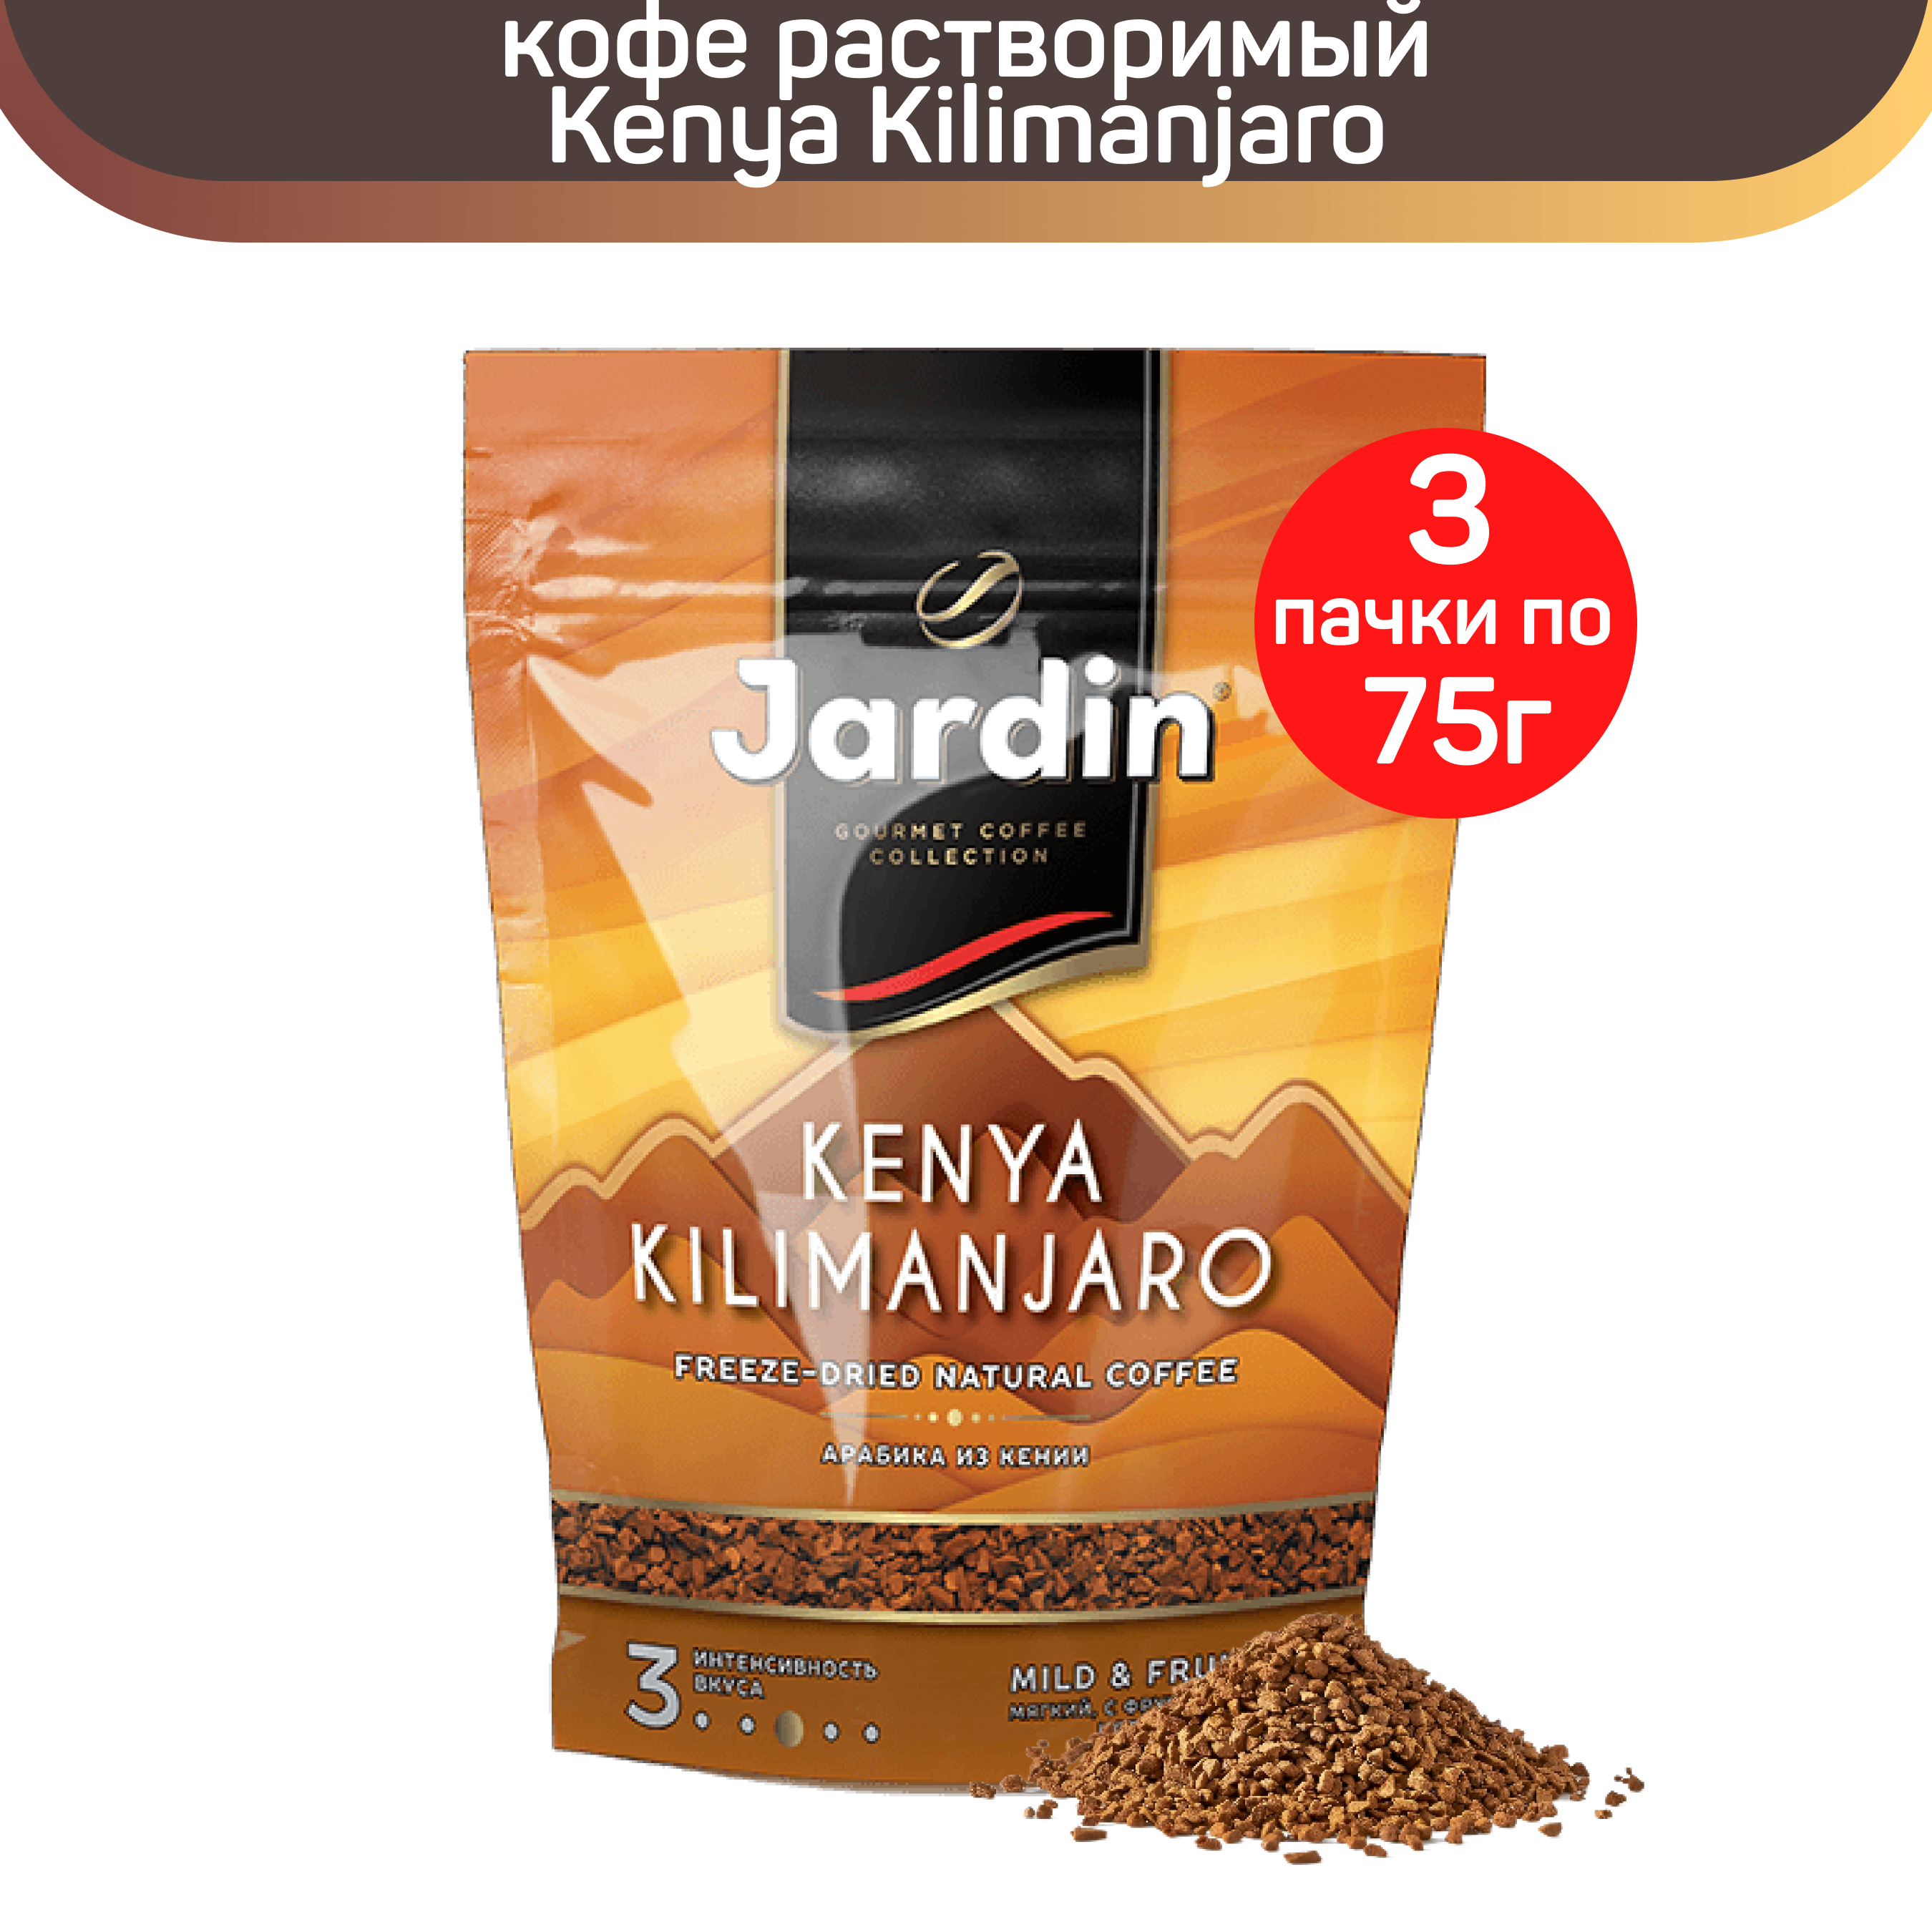 Кофе Жардин Кения Килиманджаро 75 г. Кофе растворимый Jardin Kenya Kilimanjaro, пакет, 75 г. Кофе Жардин Голд. Жардин Голд 75 упаковка. Купить кофе жардин растворимый